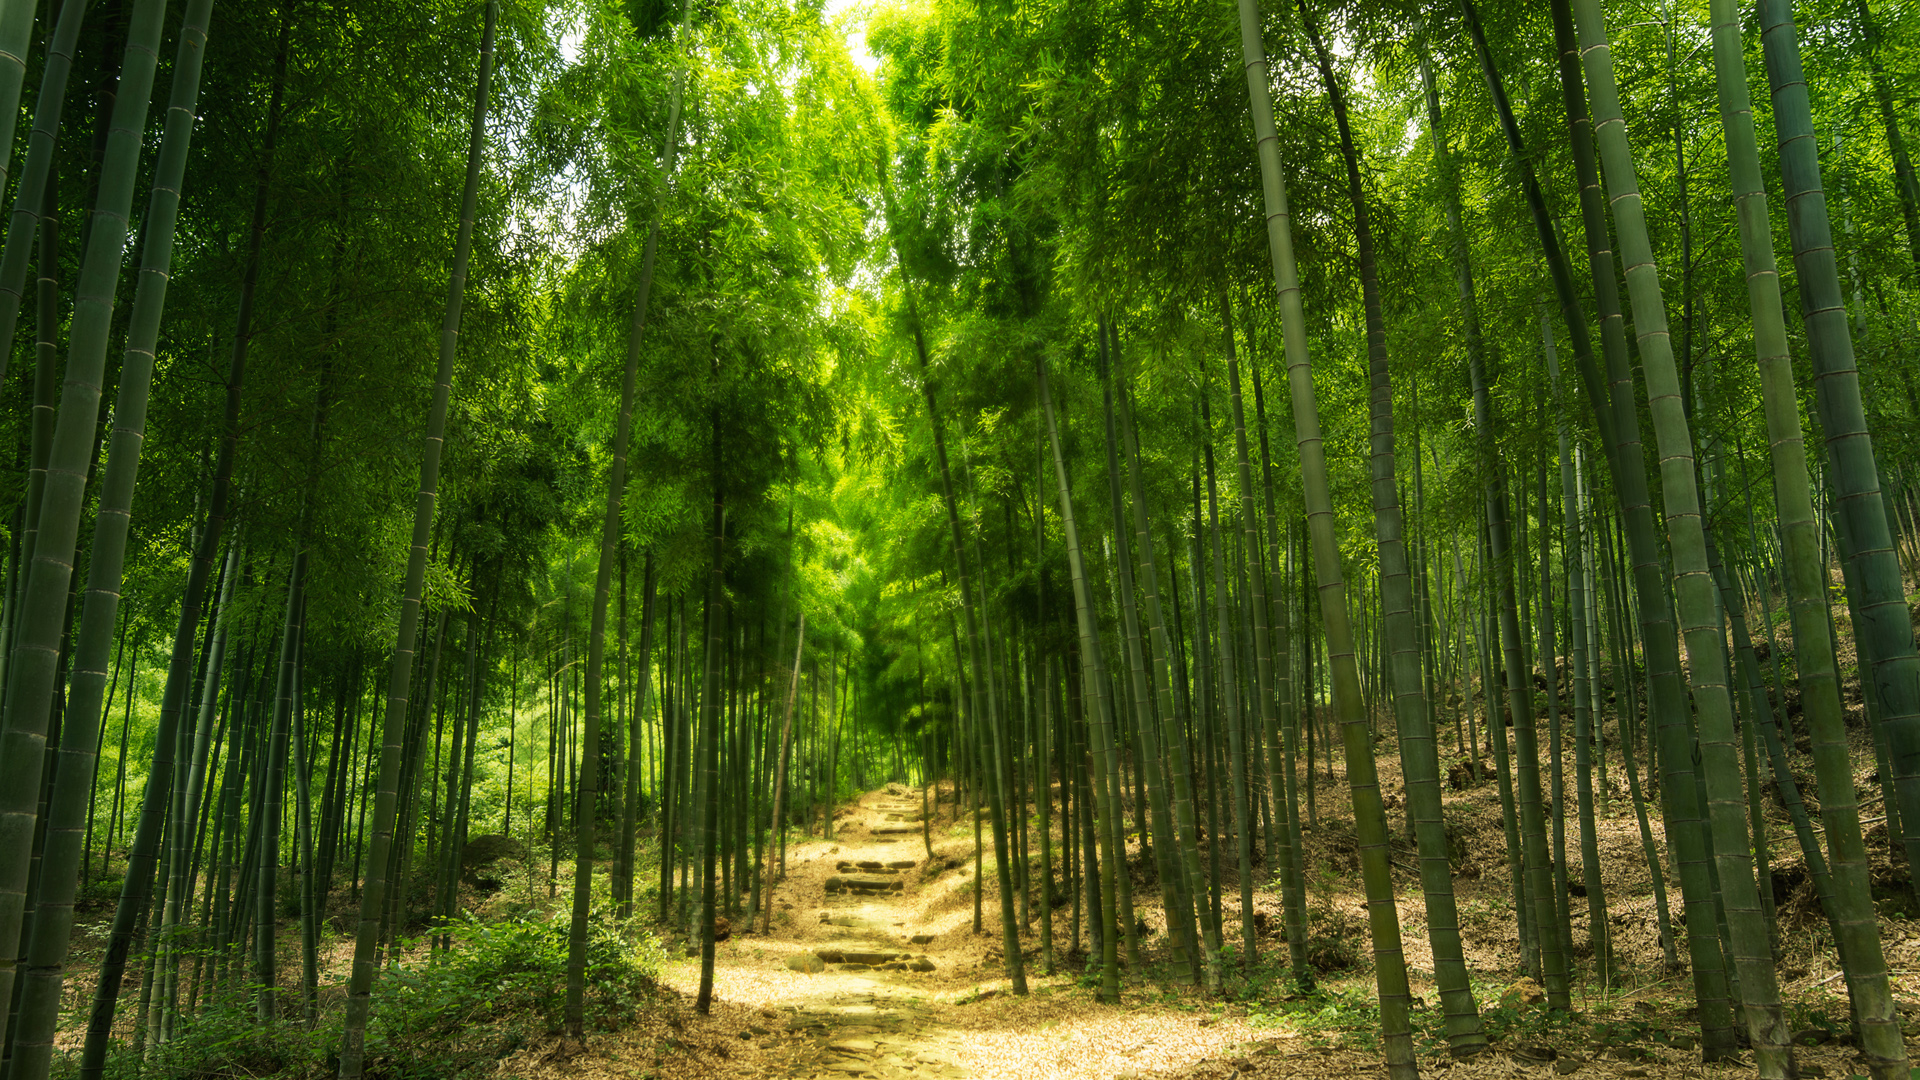 绿色竹林山路风景桌面壁纸